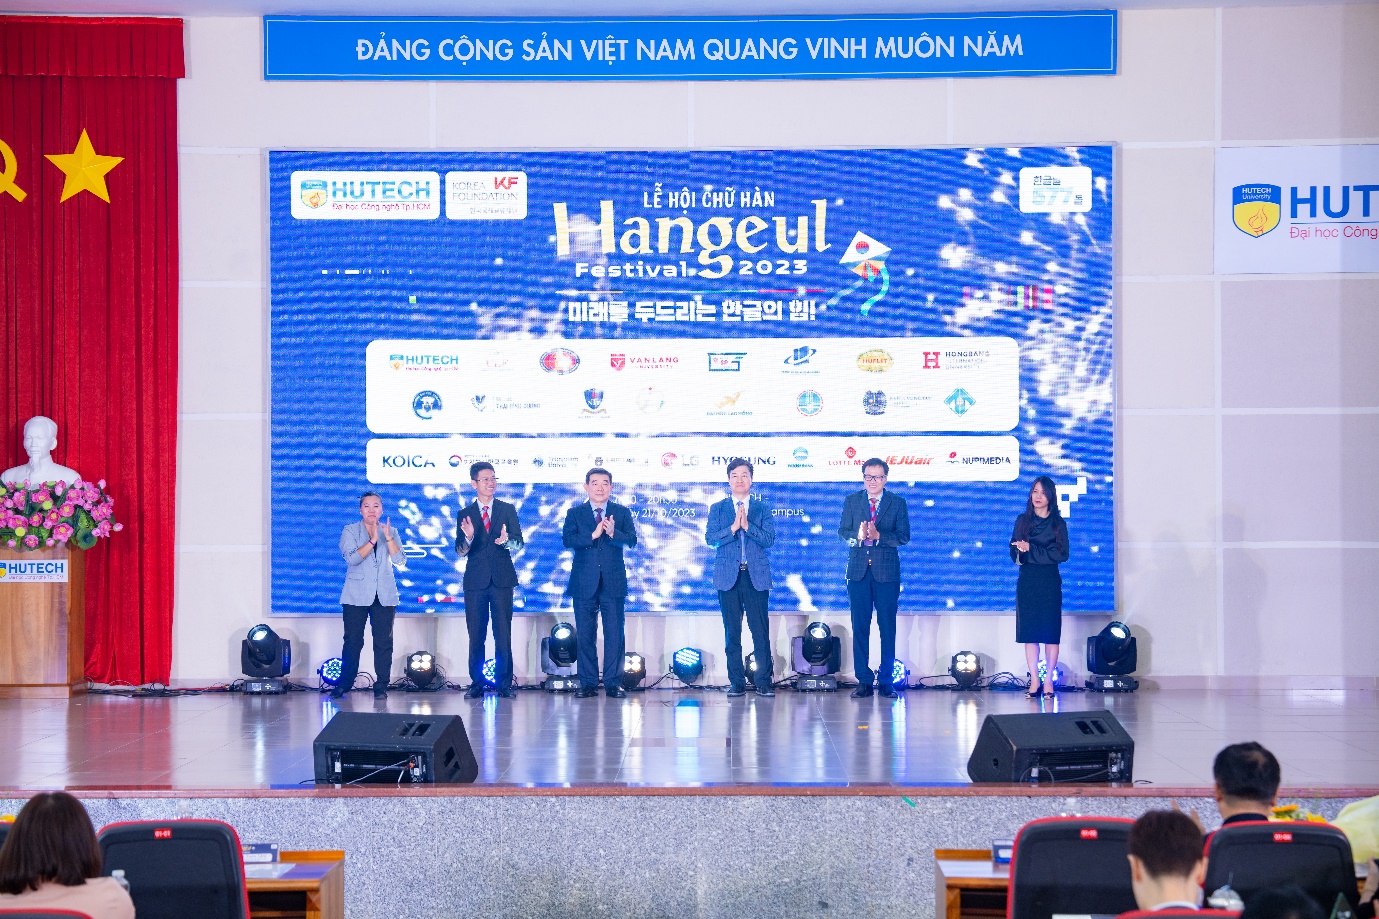 Giới trẻ TP.HCM háo hức “phá đảo” Lễ hội chữ Hàn - Hangeul Festival 2023 tại HUTECH - Ảnh 2.